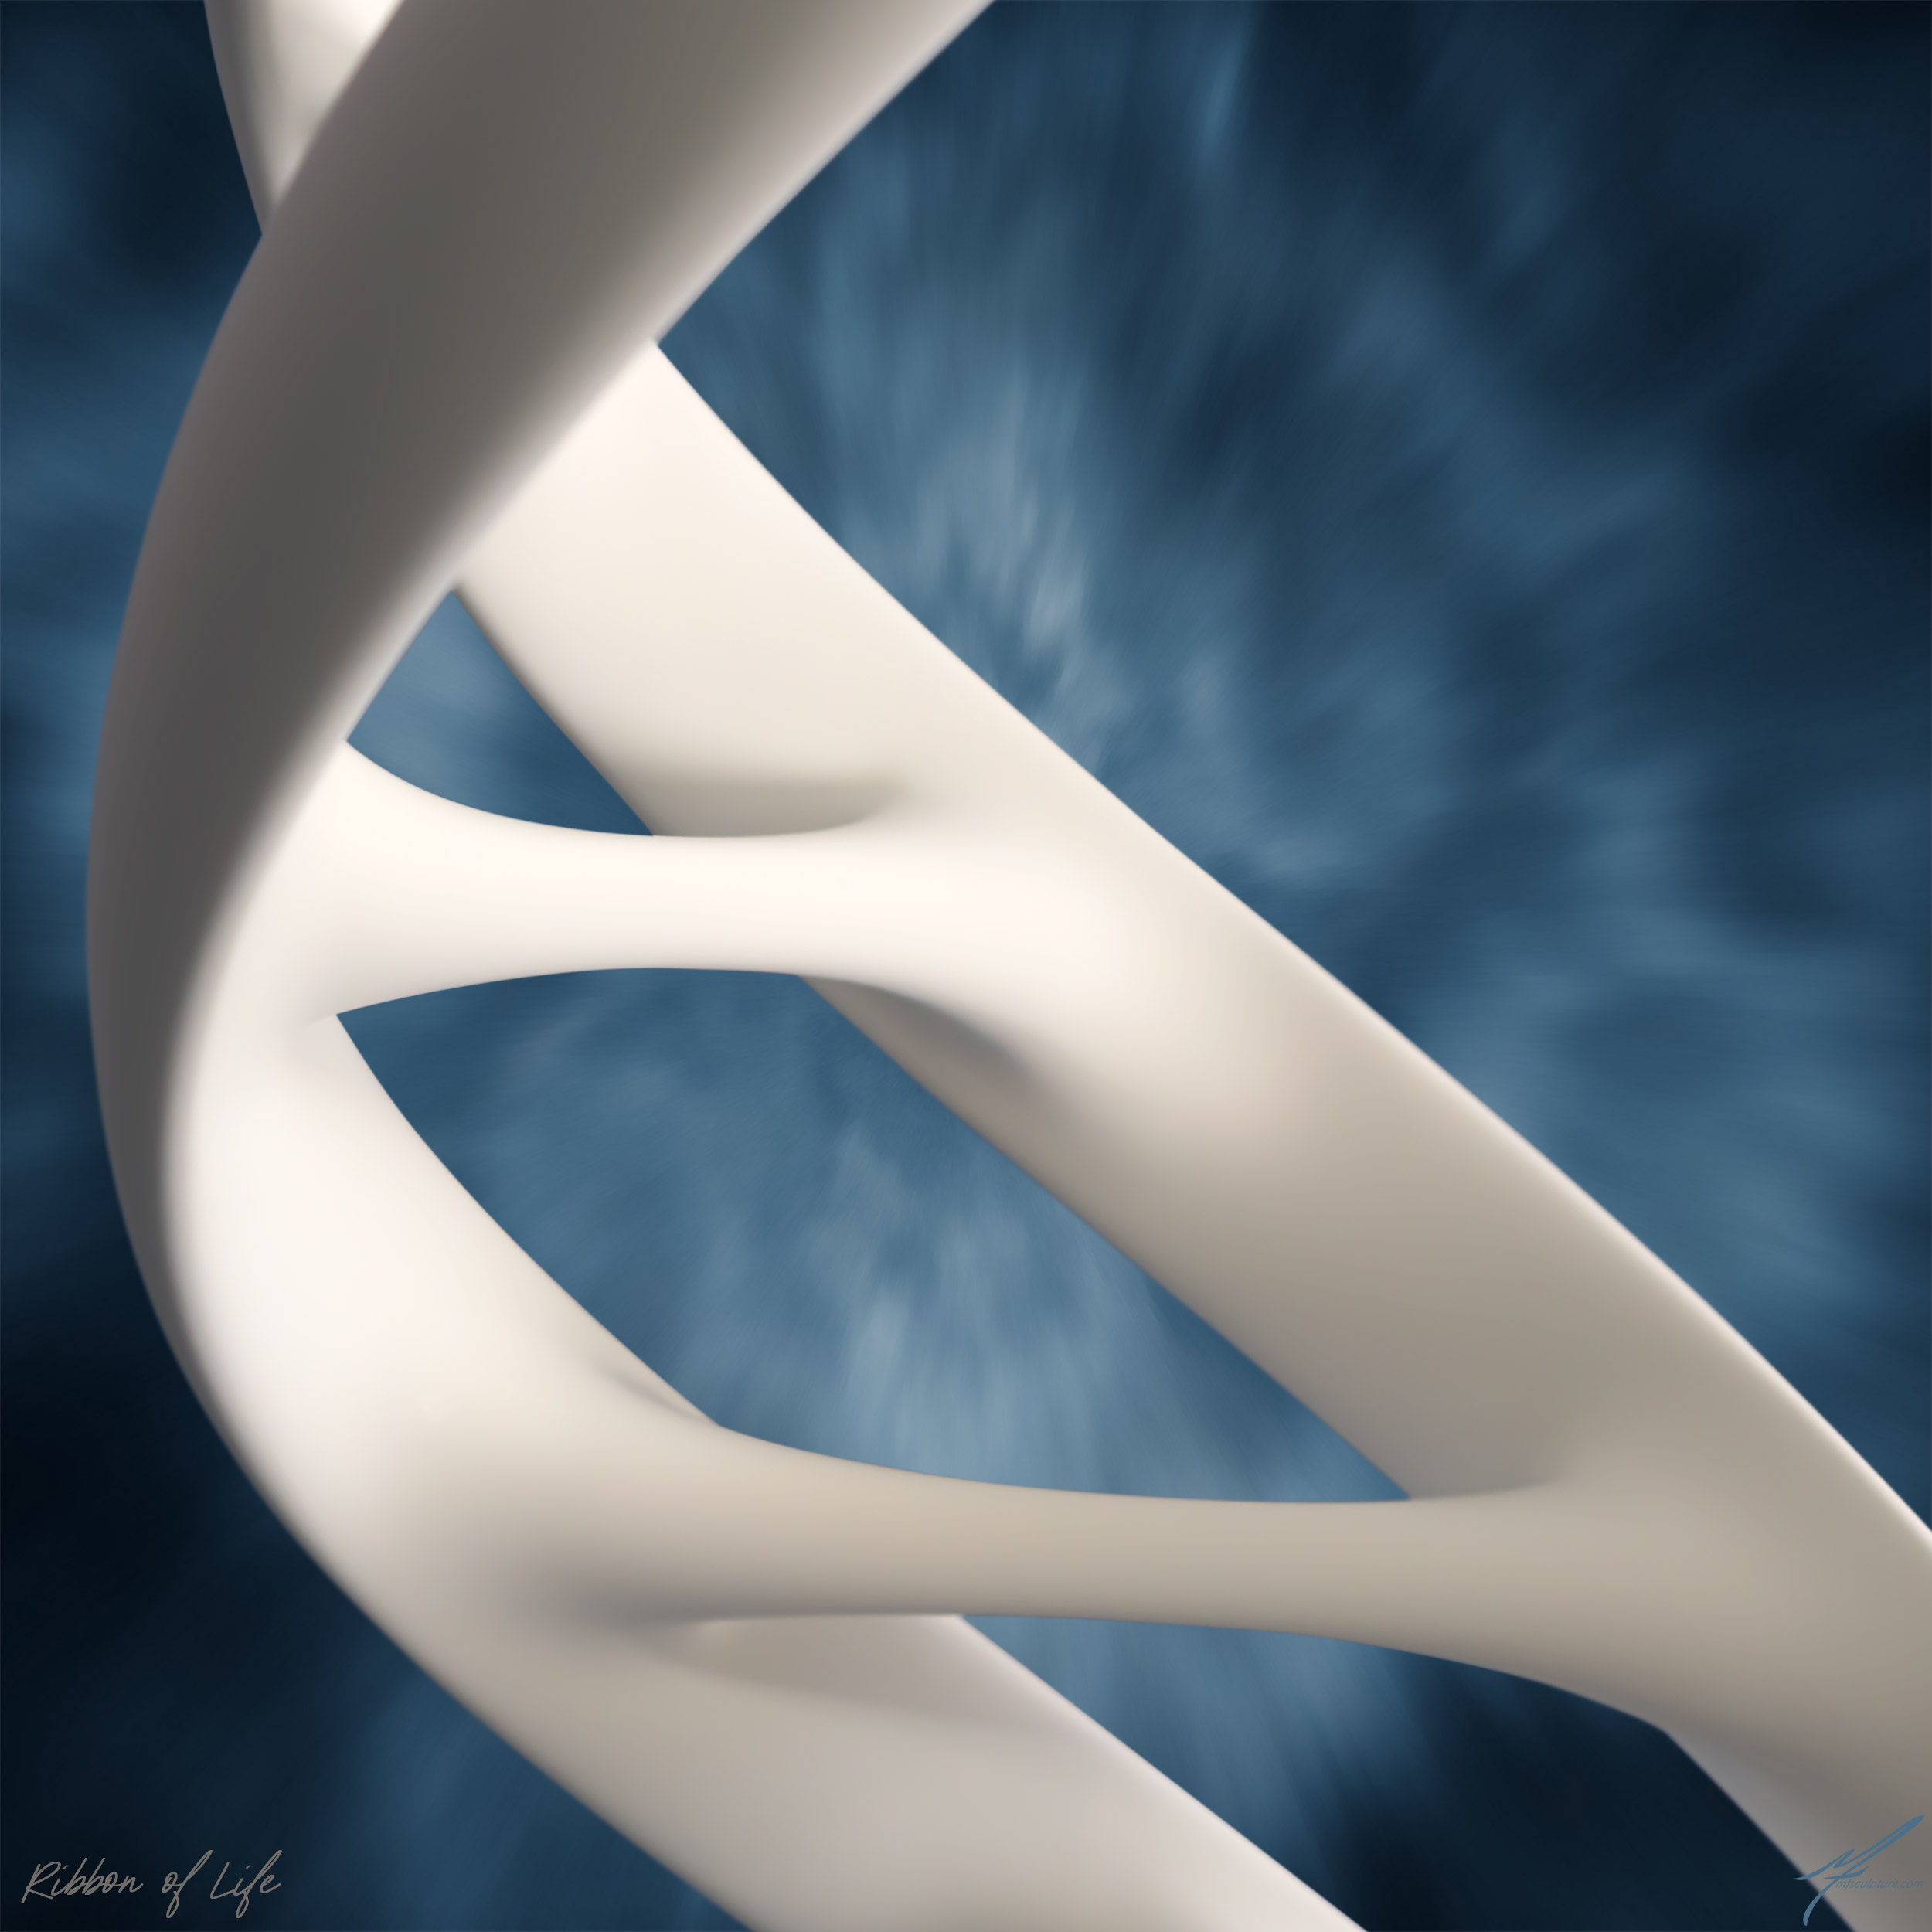 Ribbon of Life – DNA Sculpture